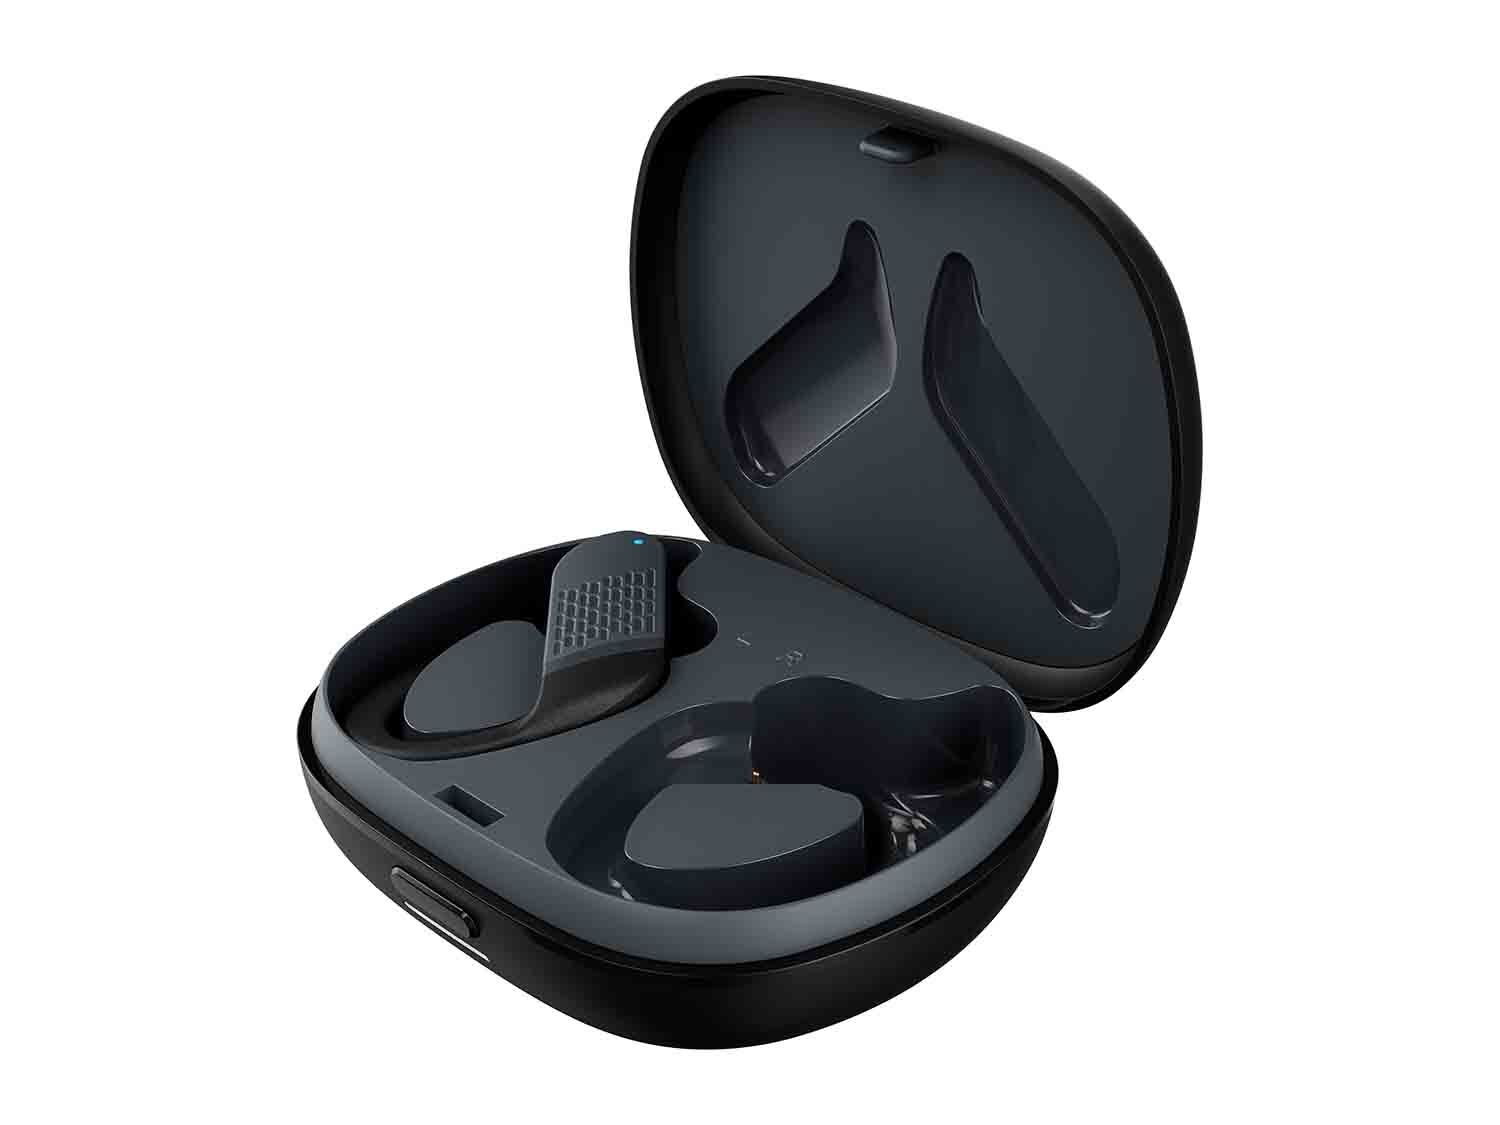 Auriculares de botón Bluetooth® inalámbricos